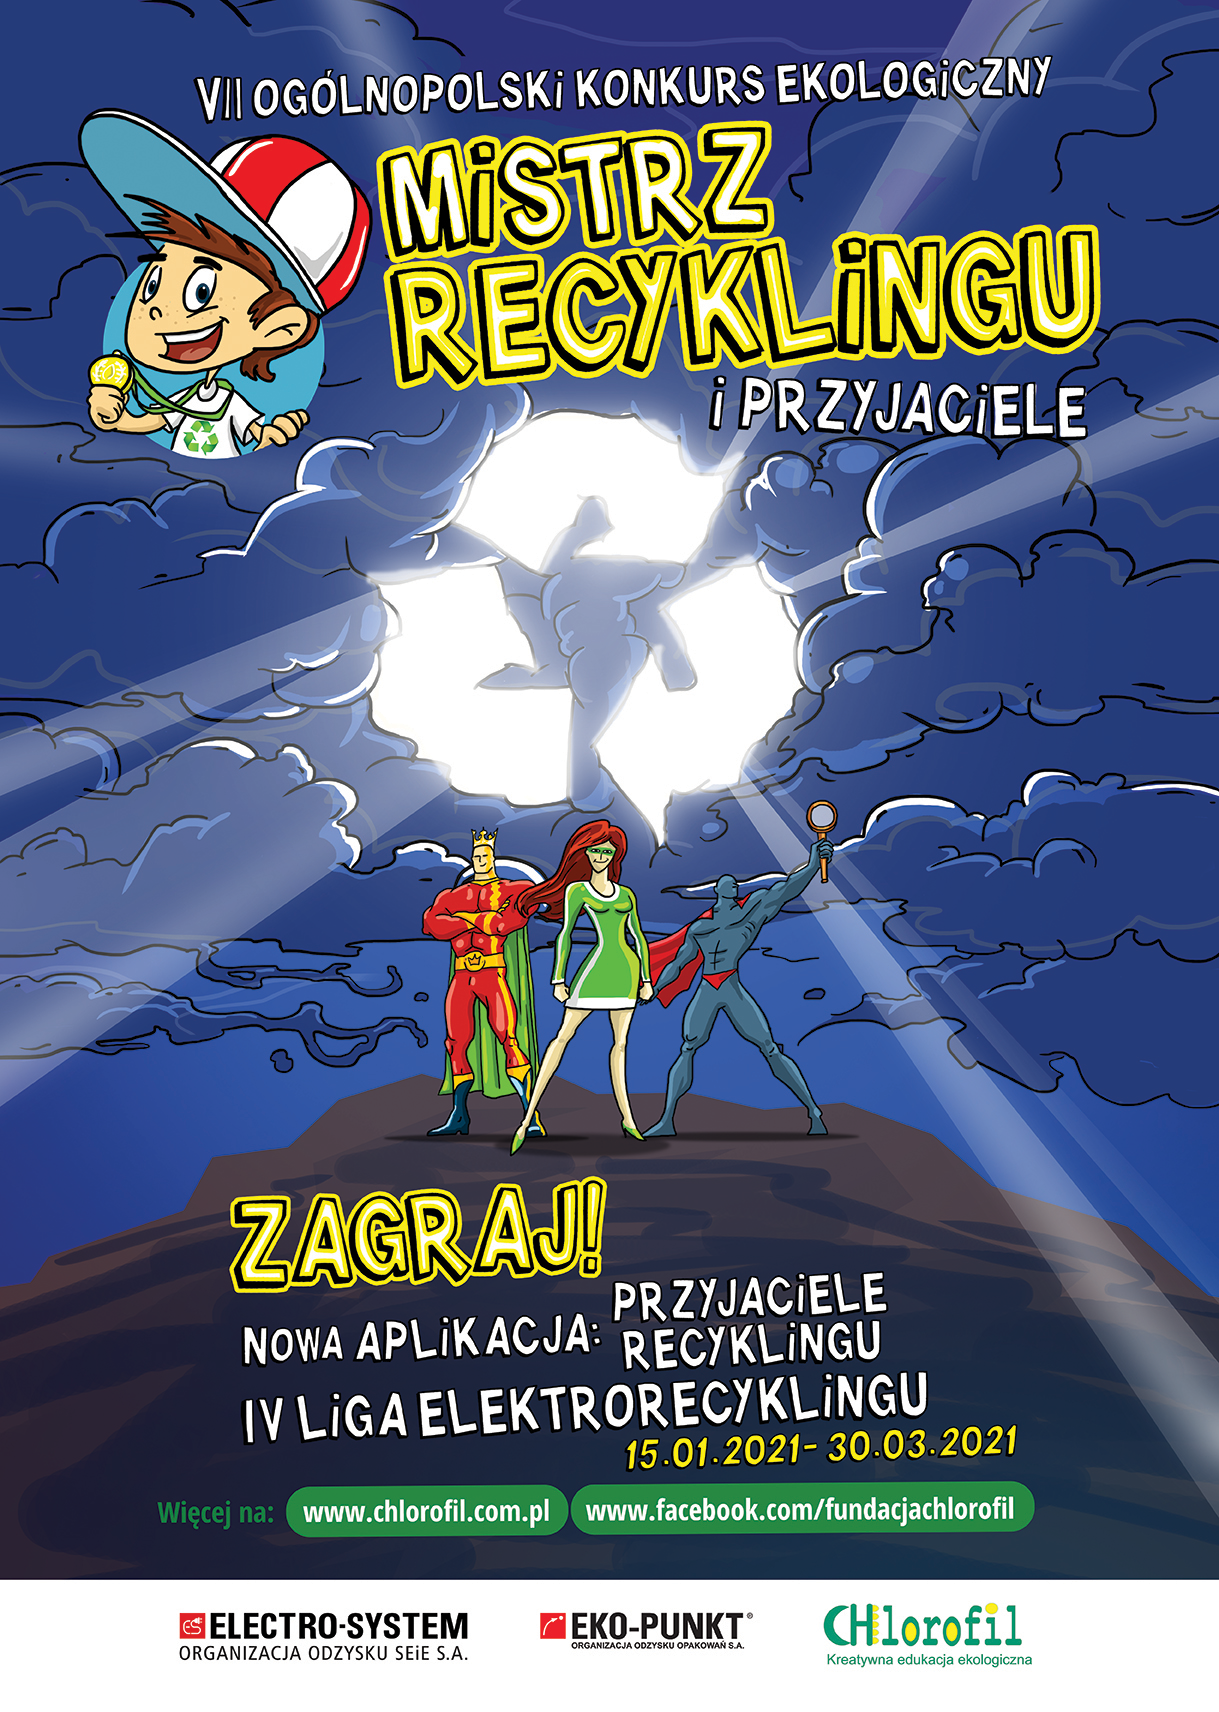 VII Ogólnopolski Konkurs Edukacji Ekologicznej dla dzieci – Mistrz Recyklingu i Przyjaciele 2021